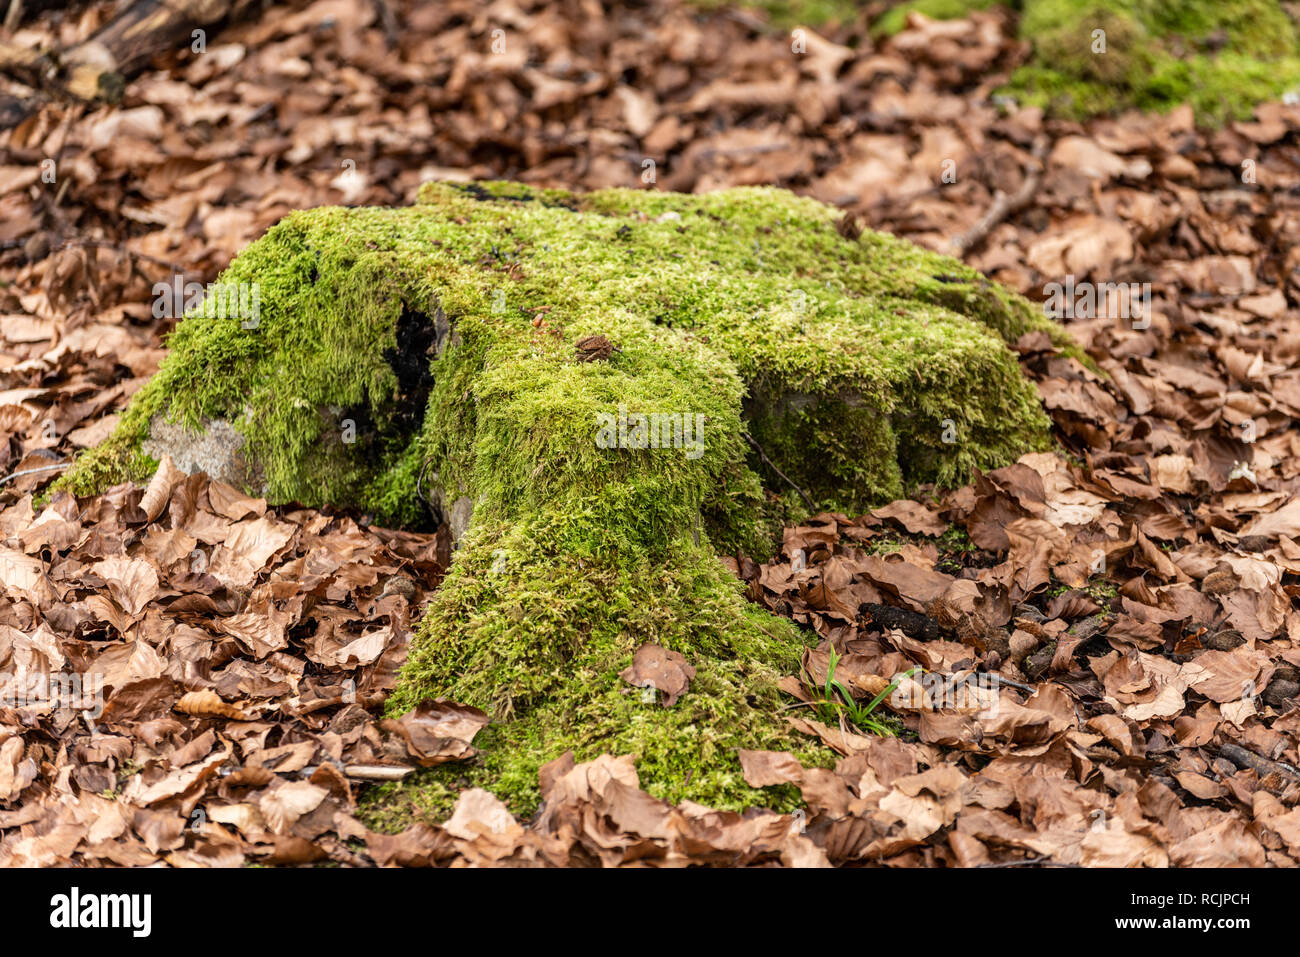 Mossy tree stump, Blackwood Forest, Hampshire, UK Stock Photo